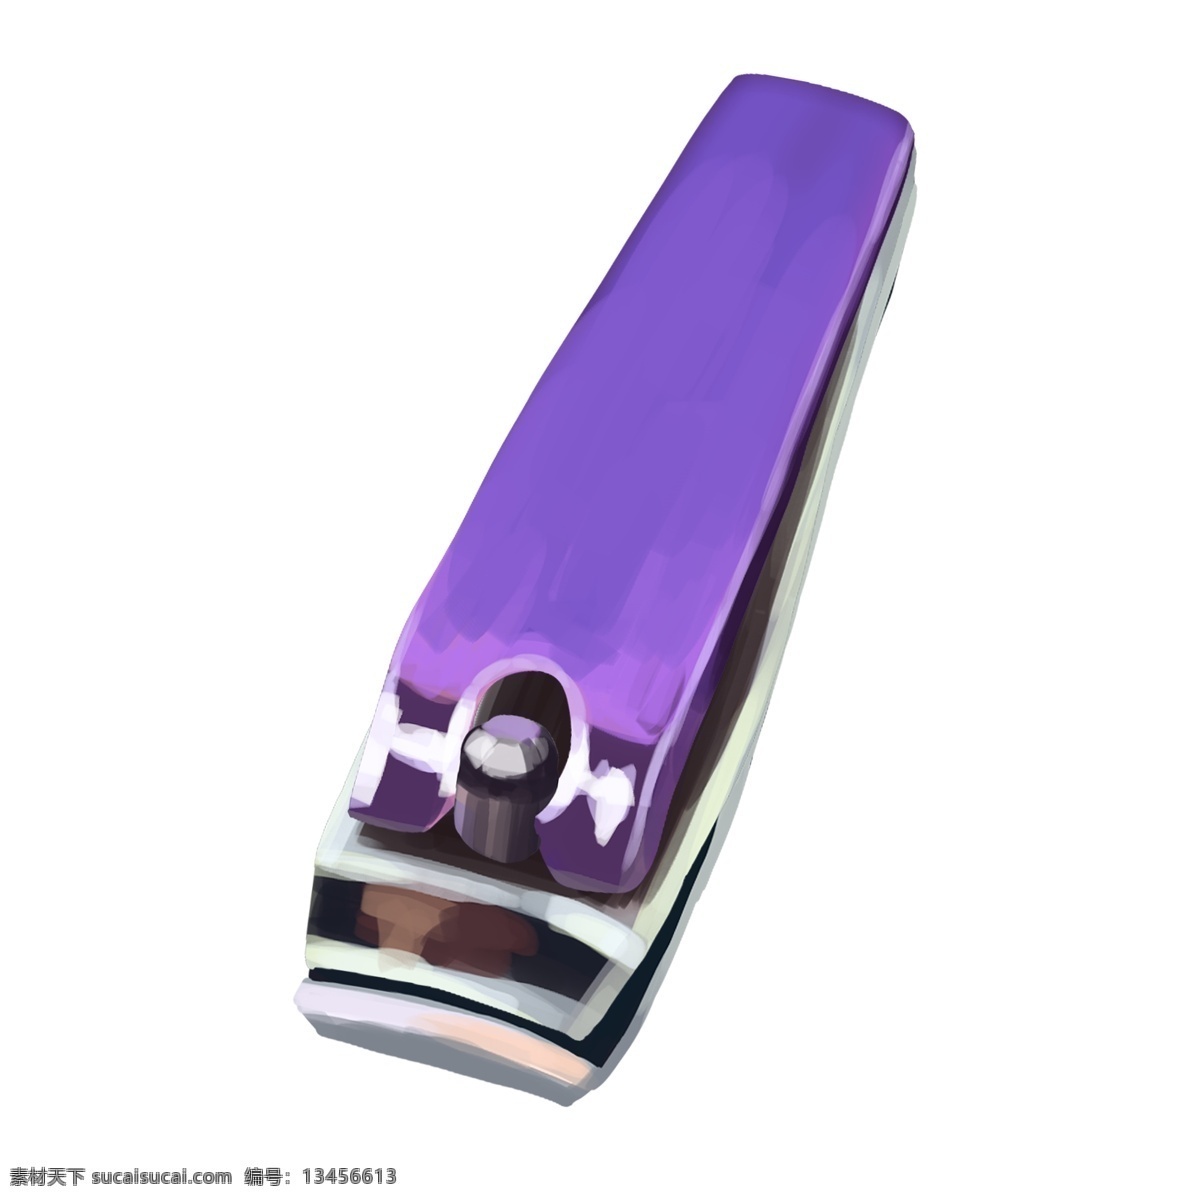 紫色 修剪 指甲刀 生活用品